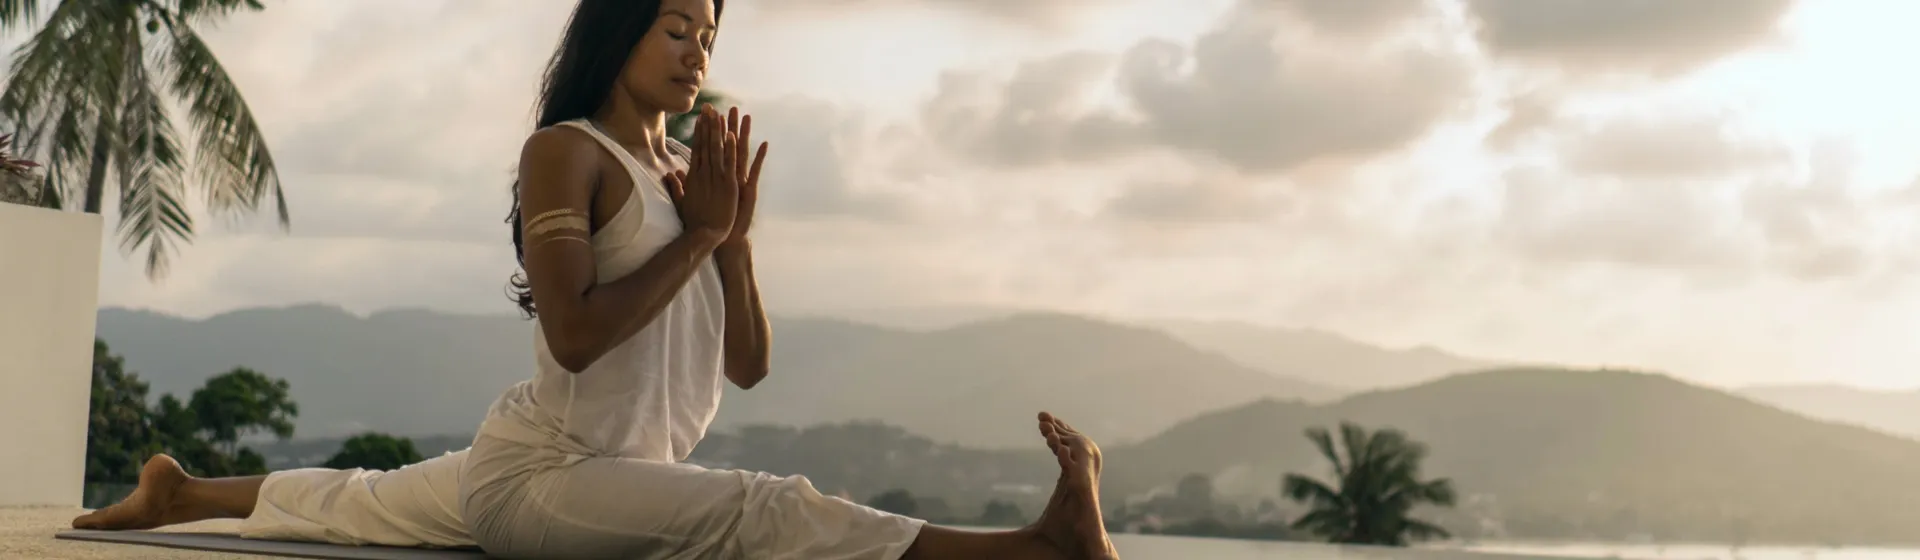 Kundalini Yoga: o que é e como funciona a prática com foco espiritual